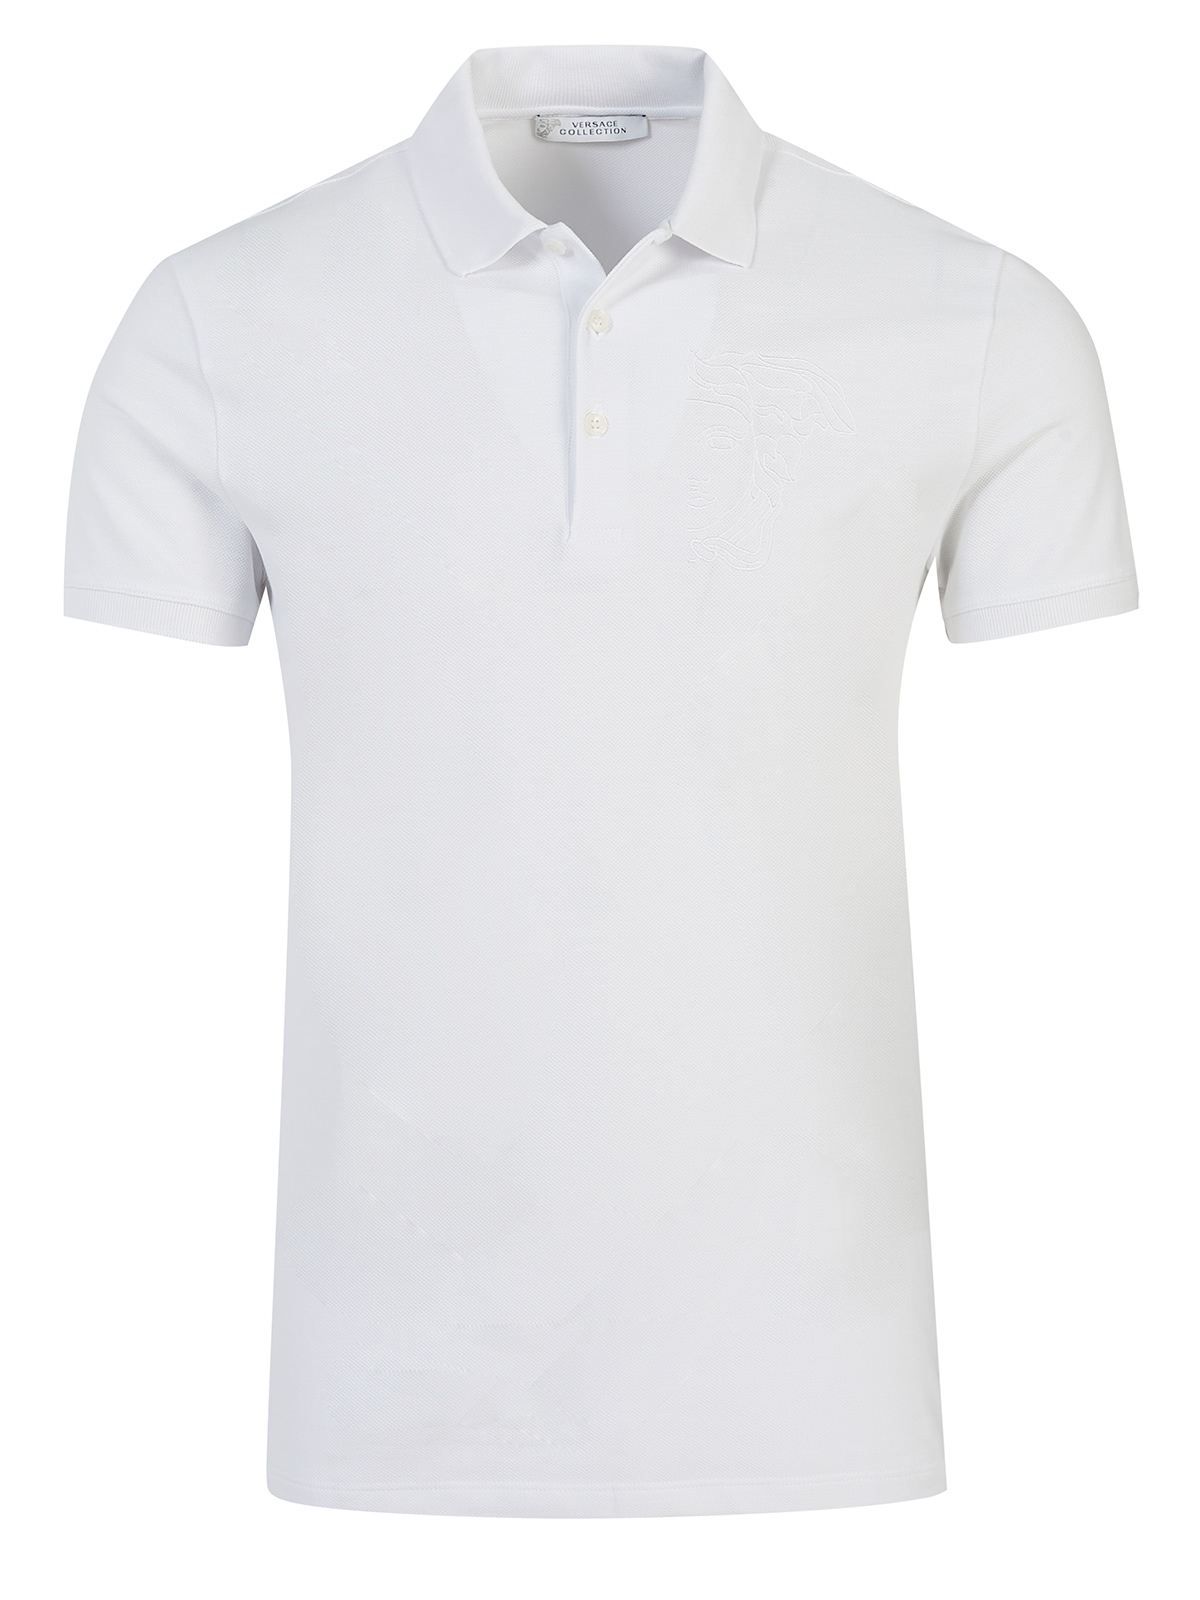 versace white shirt